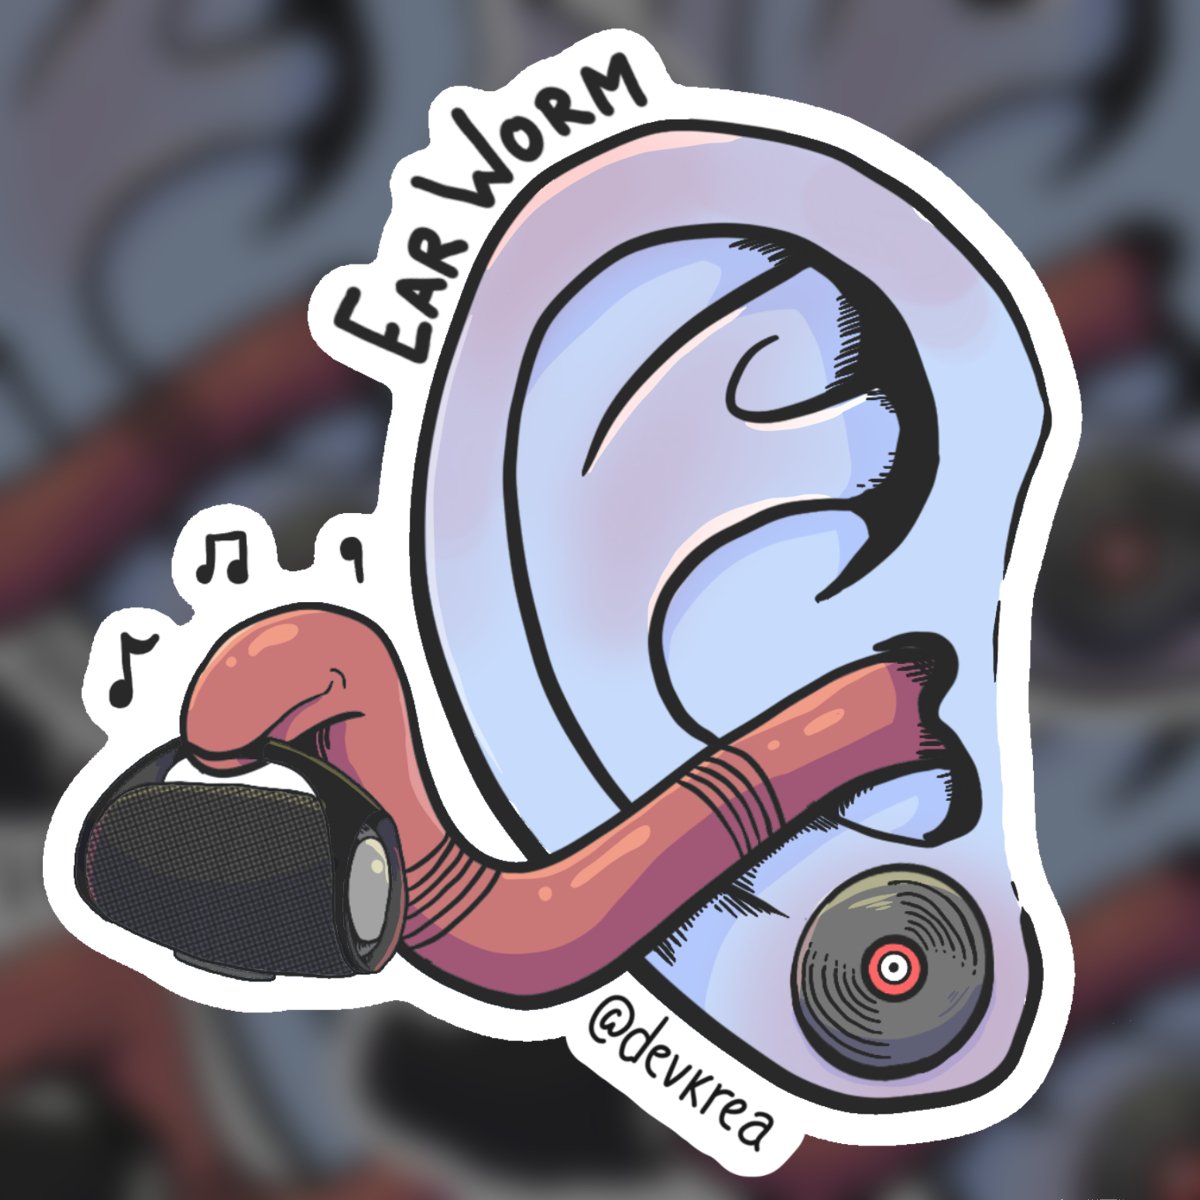 Earworm 3" Sticker | Deviant Kreations - Deviantkreations